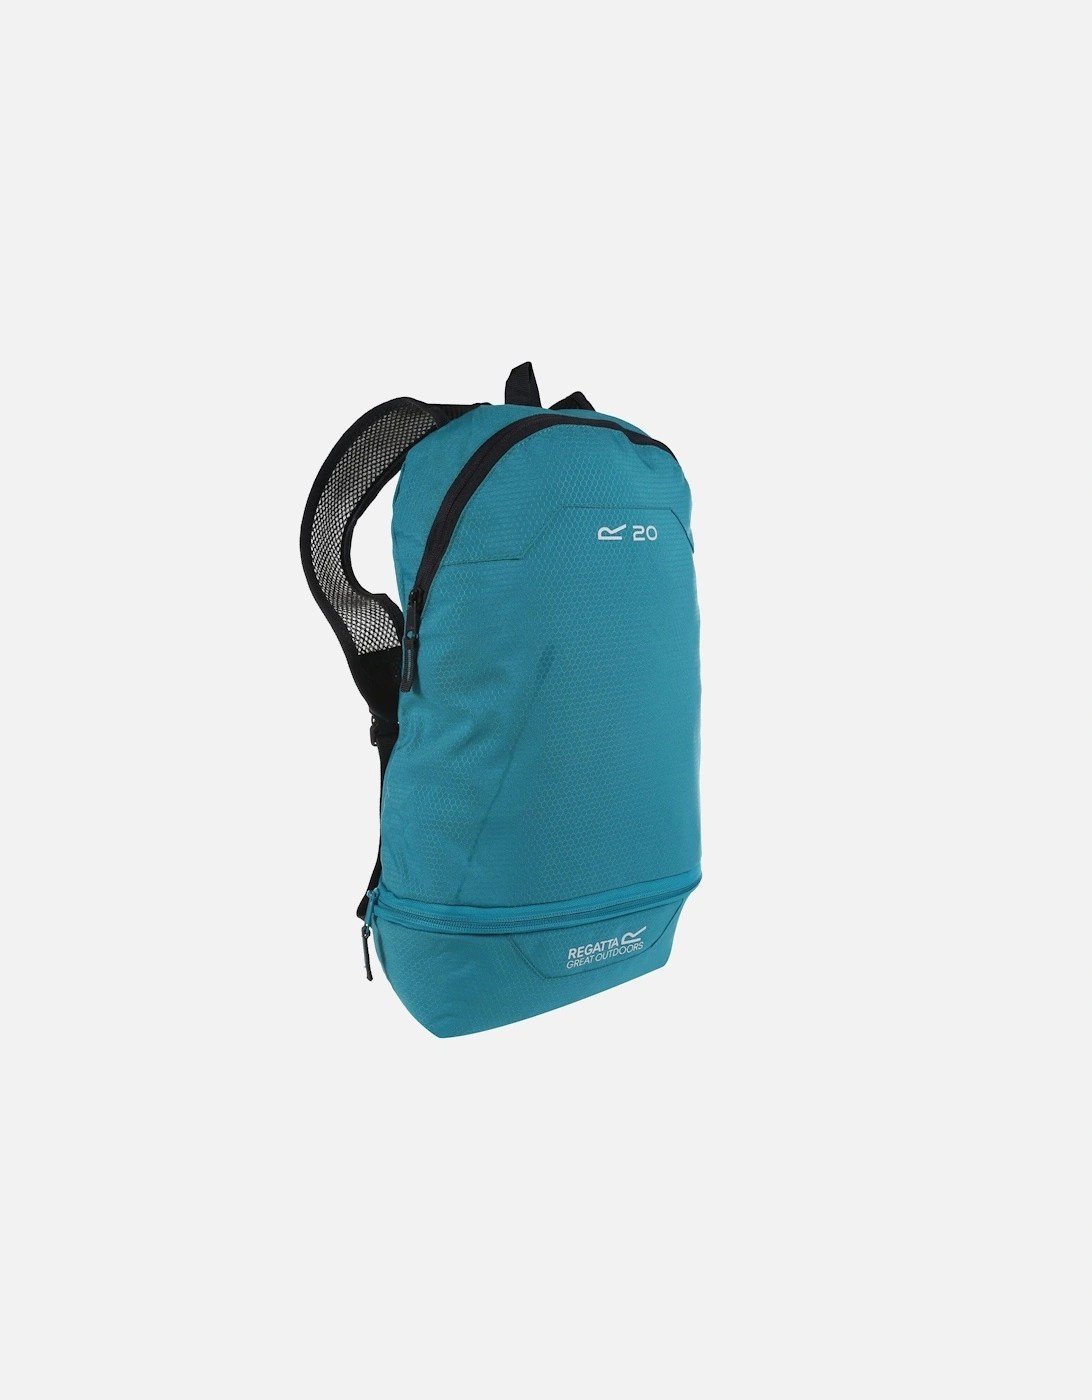 Packaway Hippack Backpack, 6 of 5